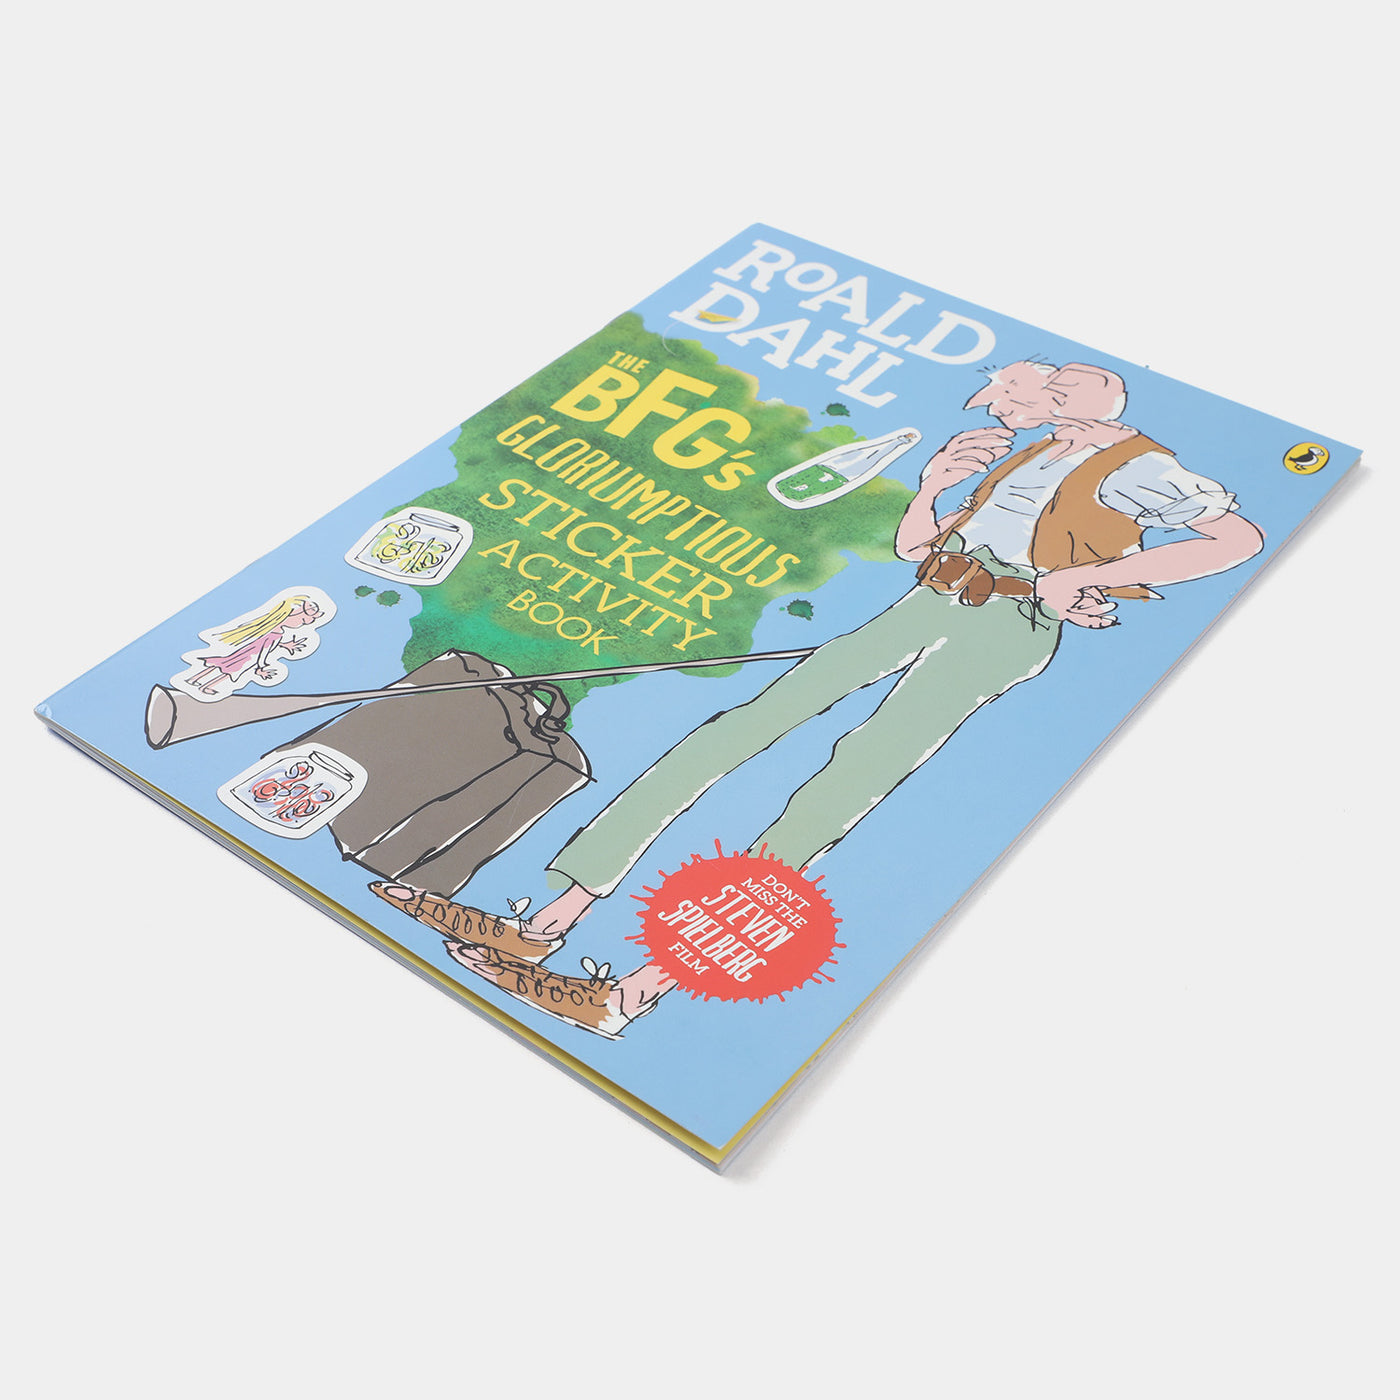 Roald Dahl Sticker Activity Book